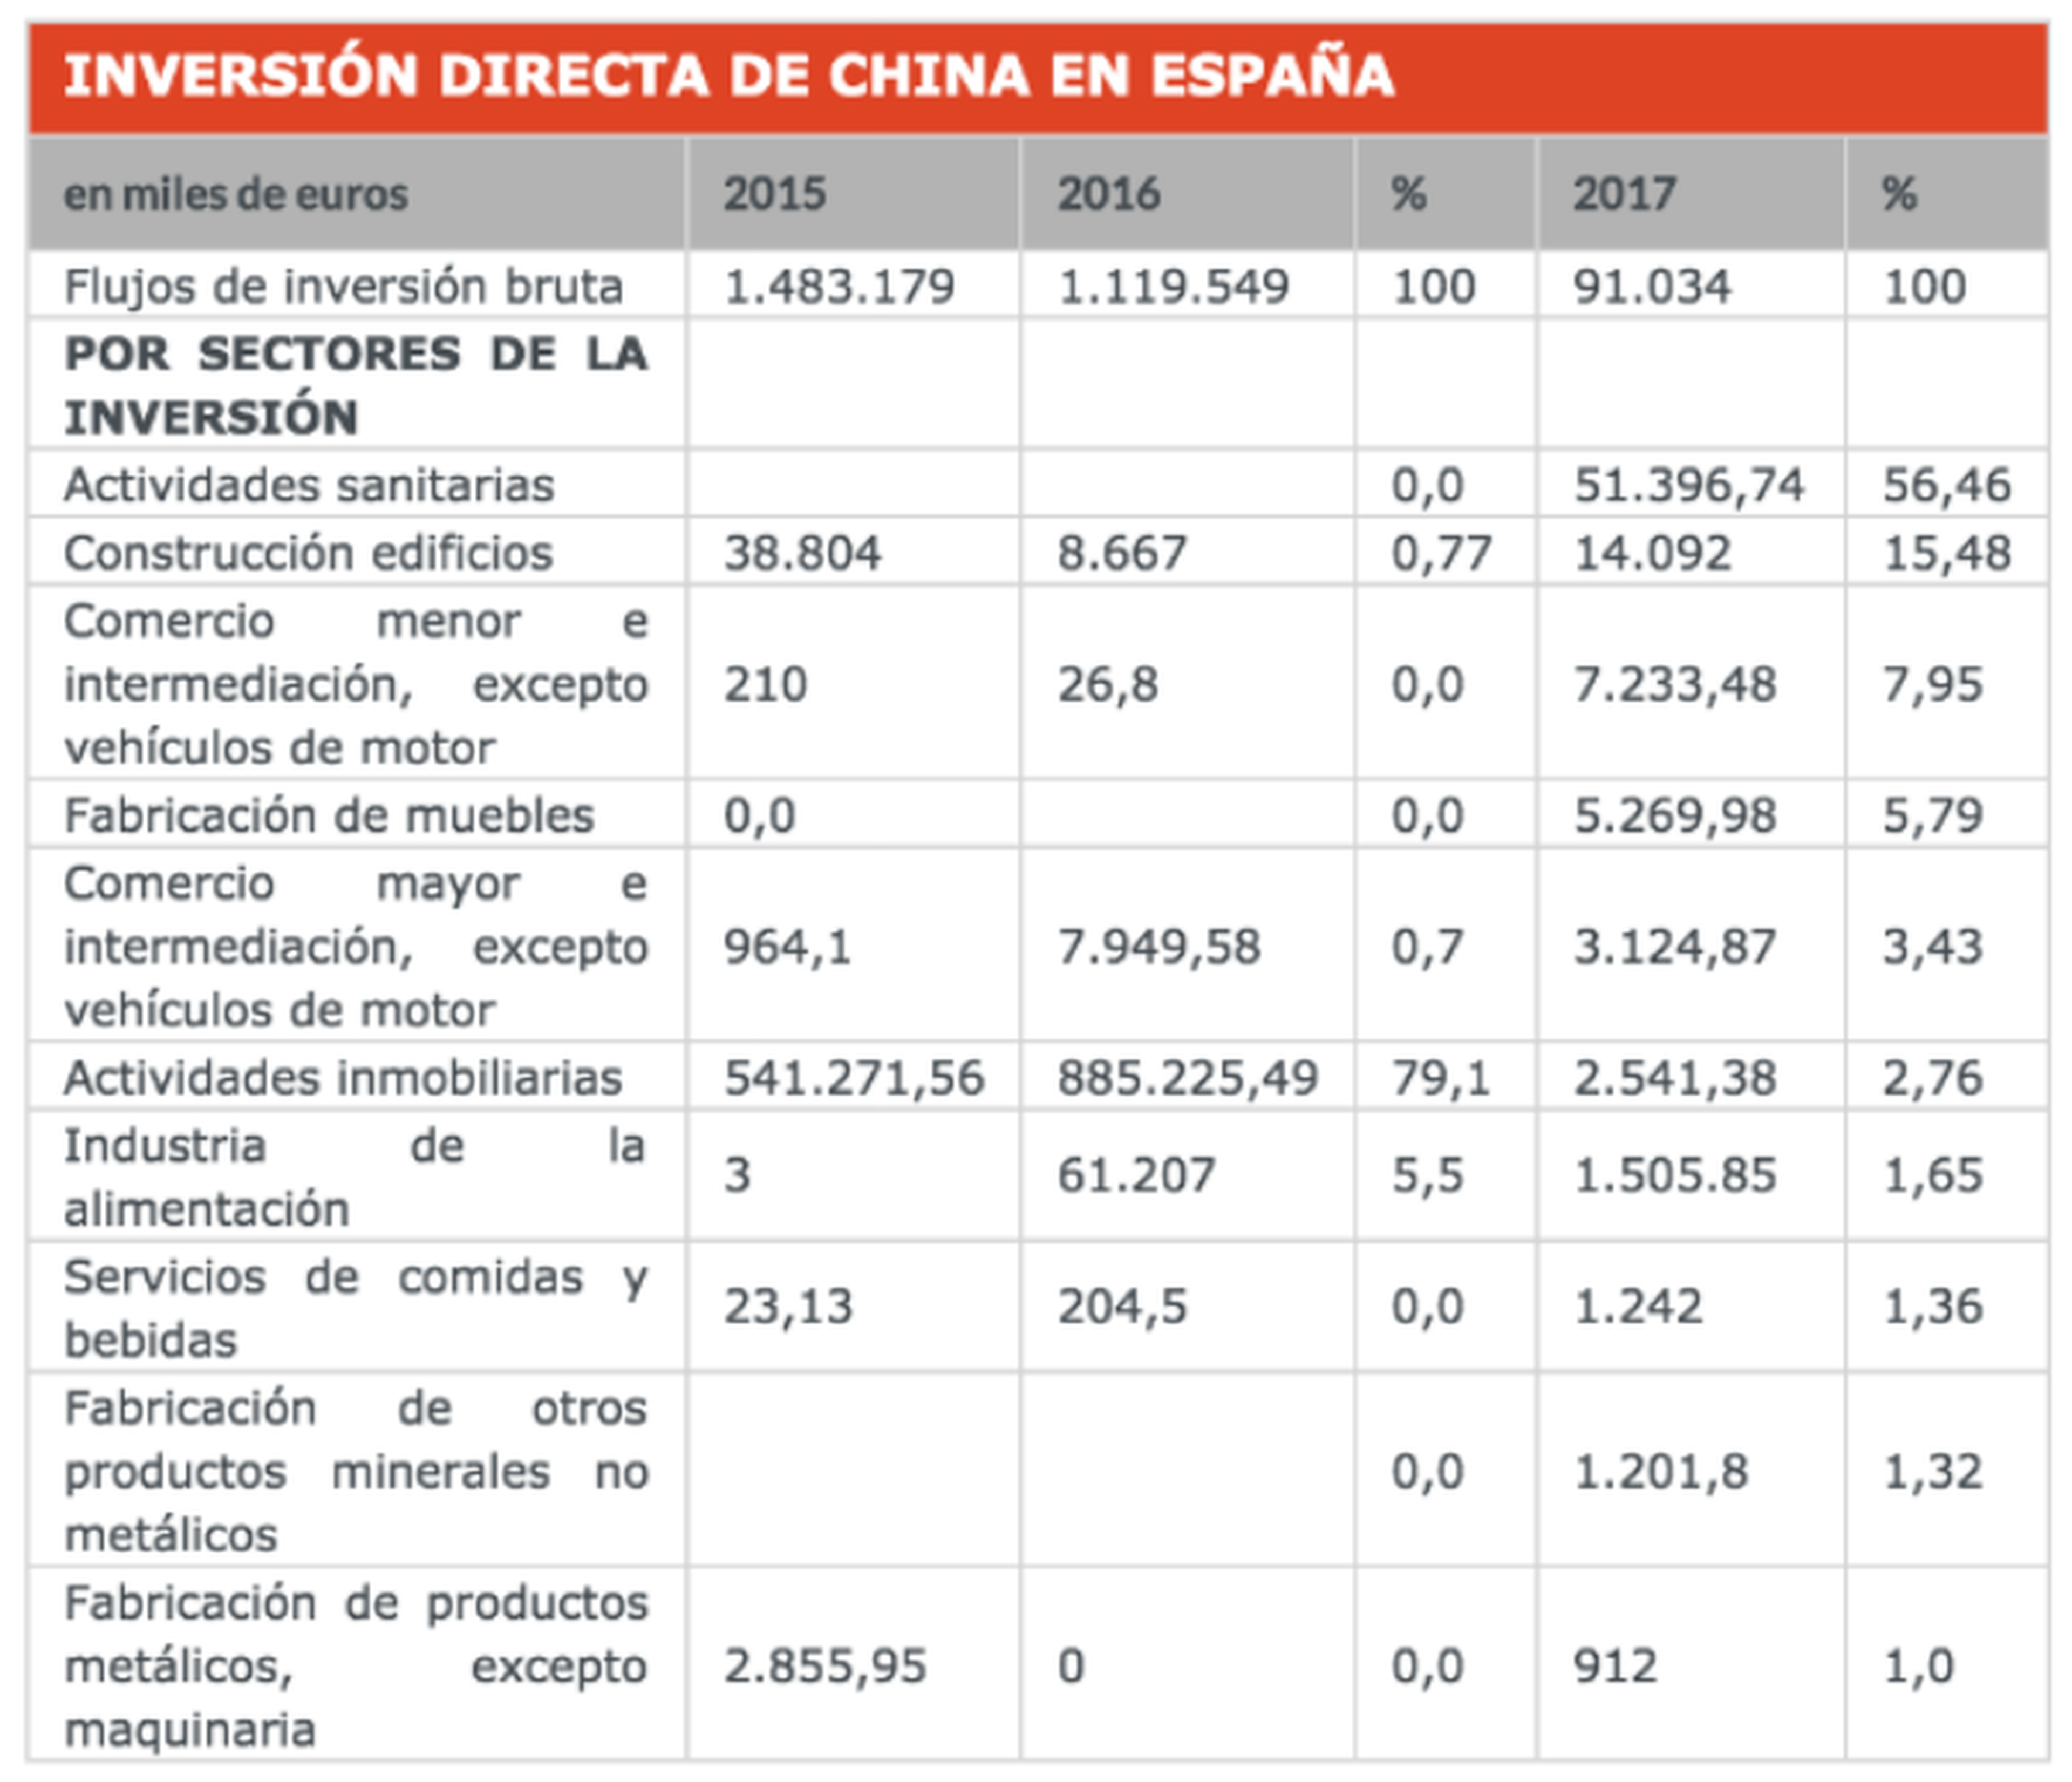 La inversión directa de China en España